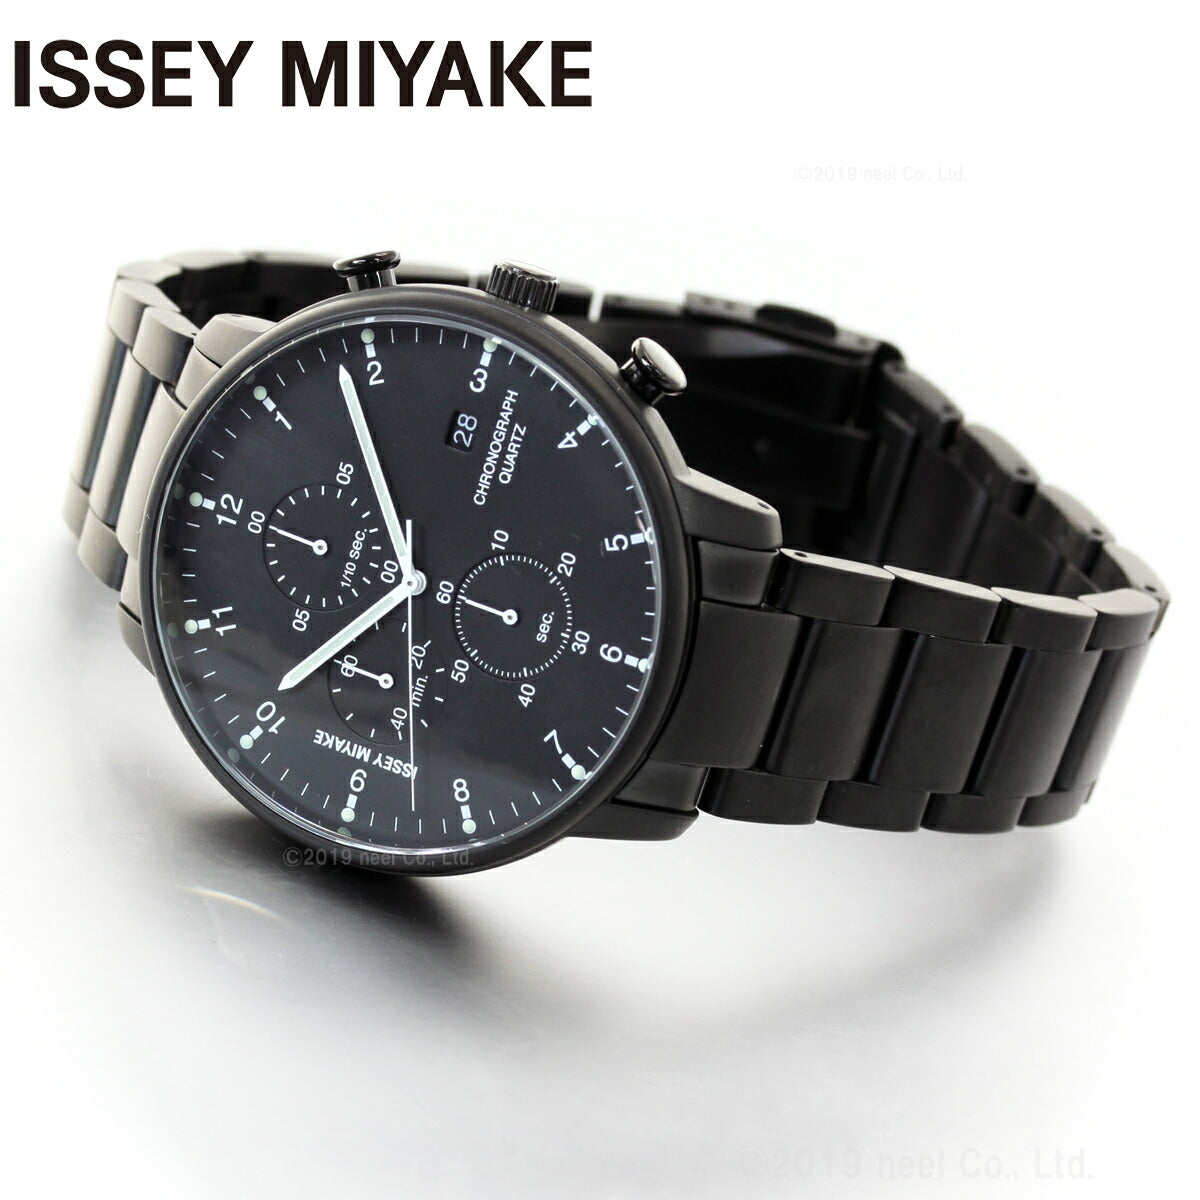 イッセイミヤケ ISSEY MIYAKE 腕時計 メンズ C シー ICHIRO IWASAKI 岩崎一郎デザイン クロノグラフ NYAD008